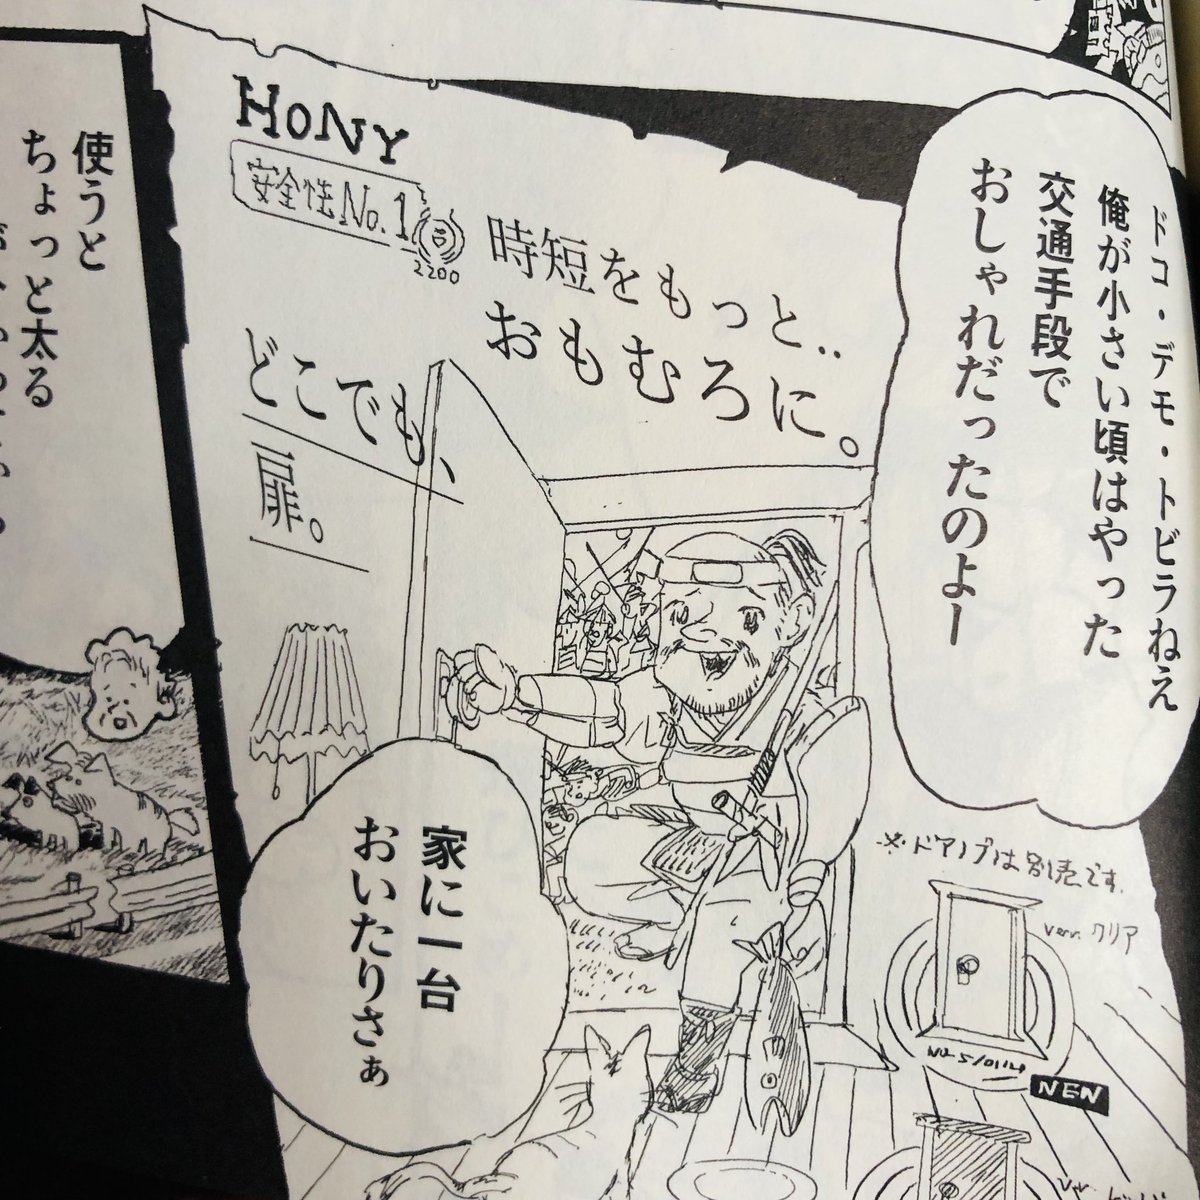 本日発売『SFマガジン』4月号(早川書房)に、宮崎夏次系先生の連載漫画、最新話が掲載されております。今回はおしゃれなアノ扉が登場しているようです。気になった皆さま、ぜひ書店へ🏃‍♂️🏃‍♀️!! 